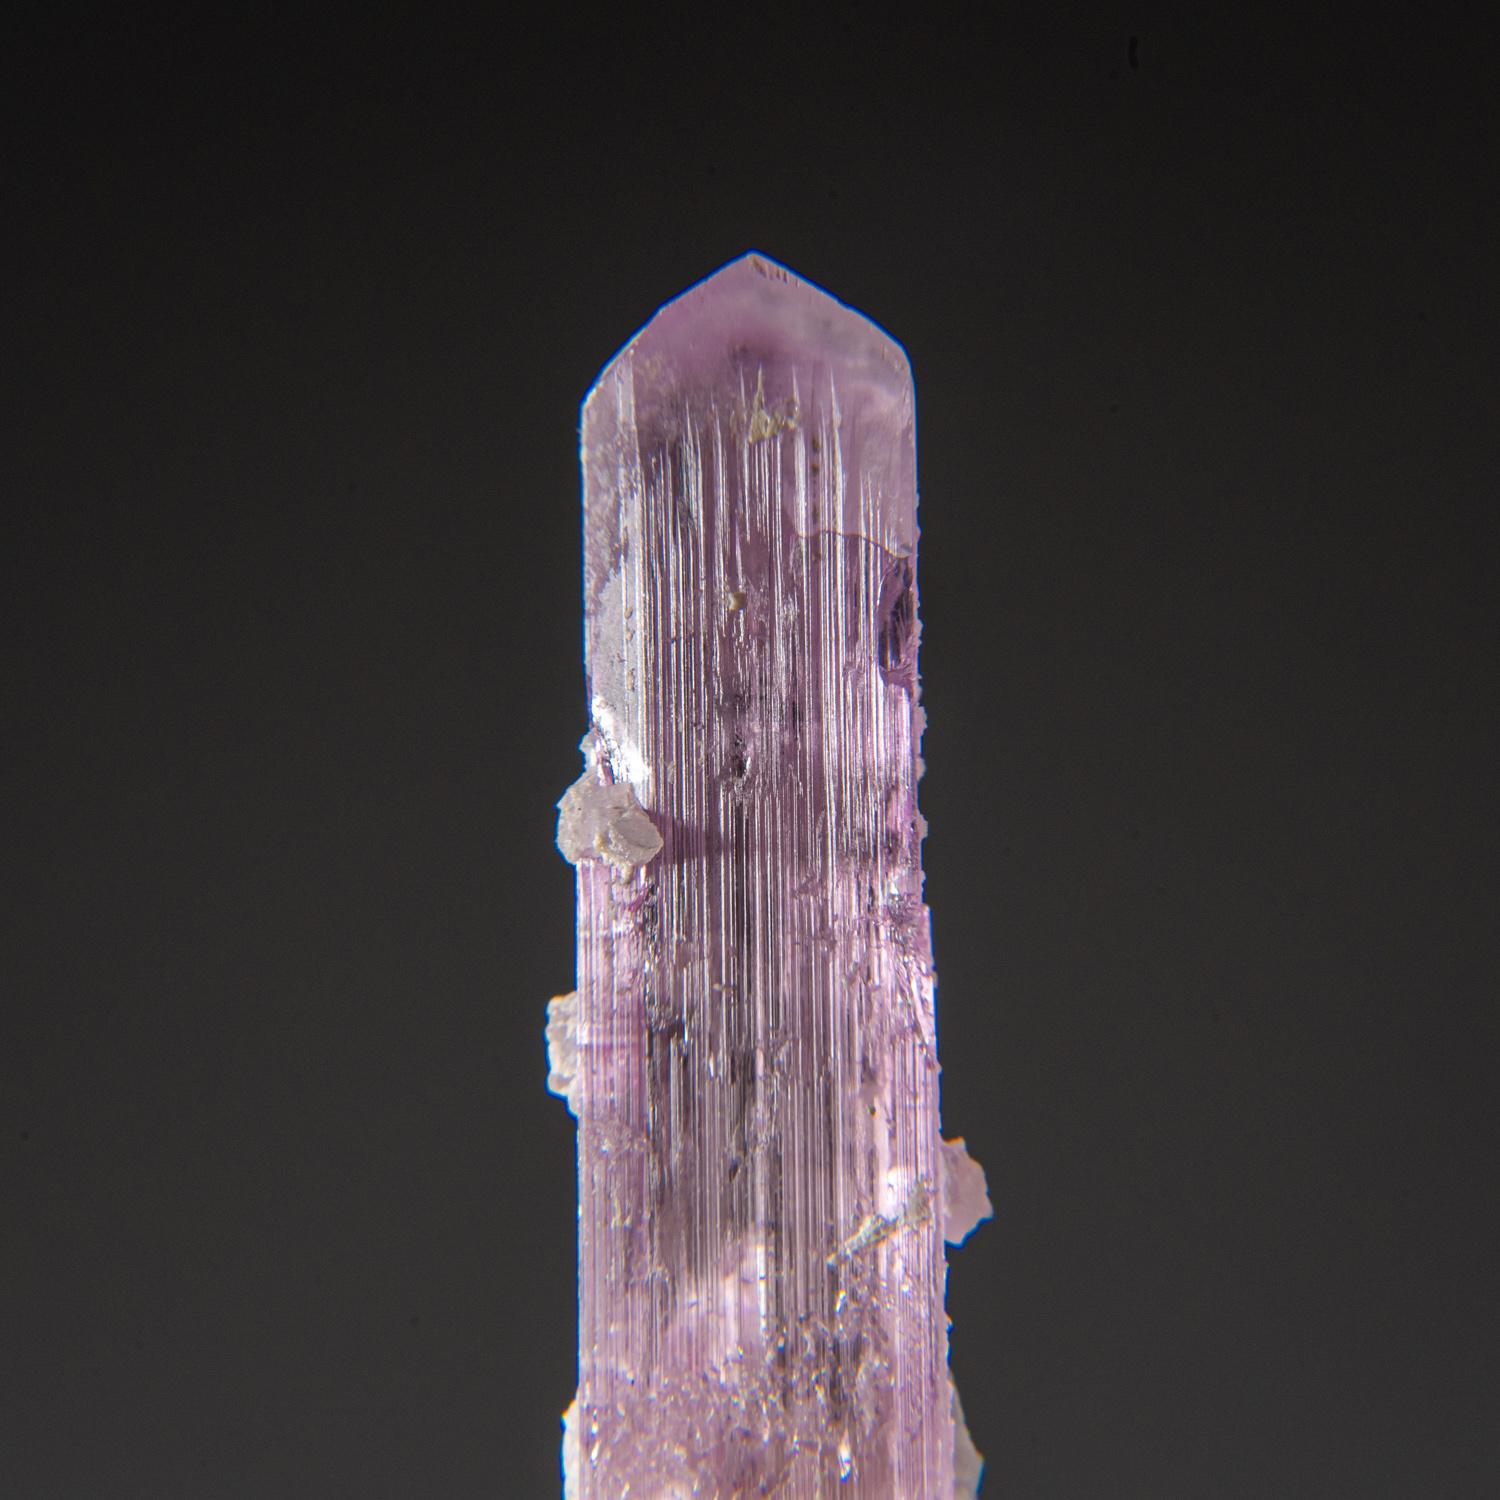 Cristal unique à double terminaison de kunzite rose transparente, la variété rose de qualité gemme du spodumène, avec une terminaison en forme de ciseau et des faces prismatiques striées. Le cristal de kunzite est sans défaut interne.

La kunzite